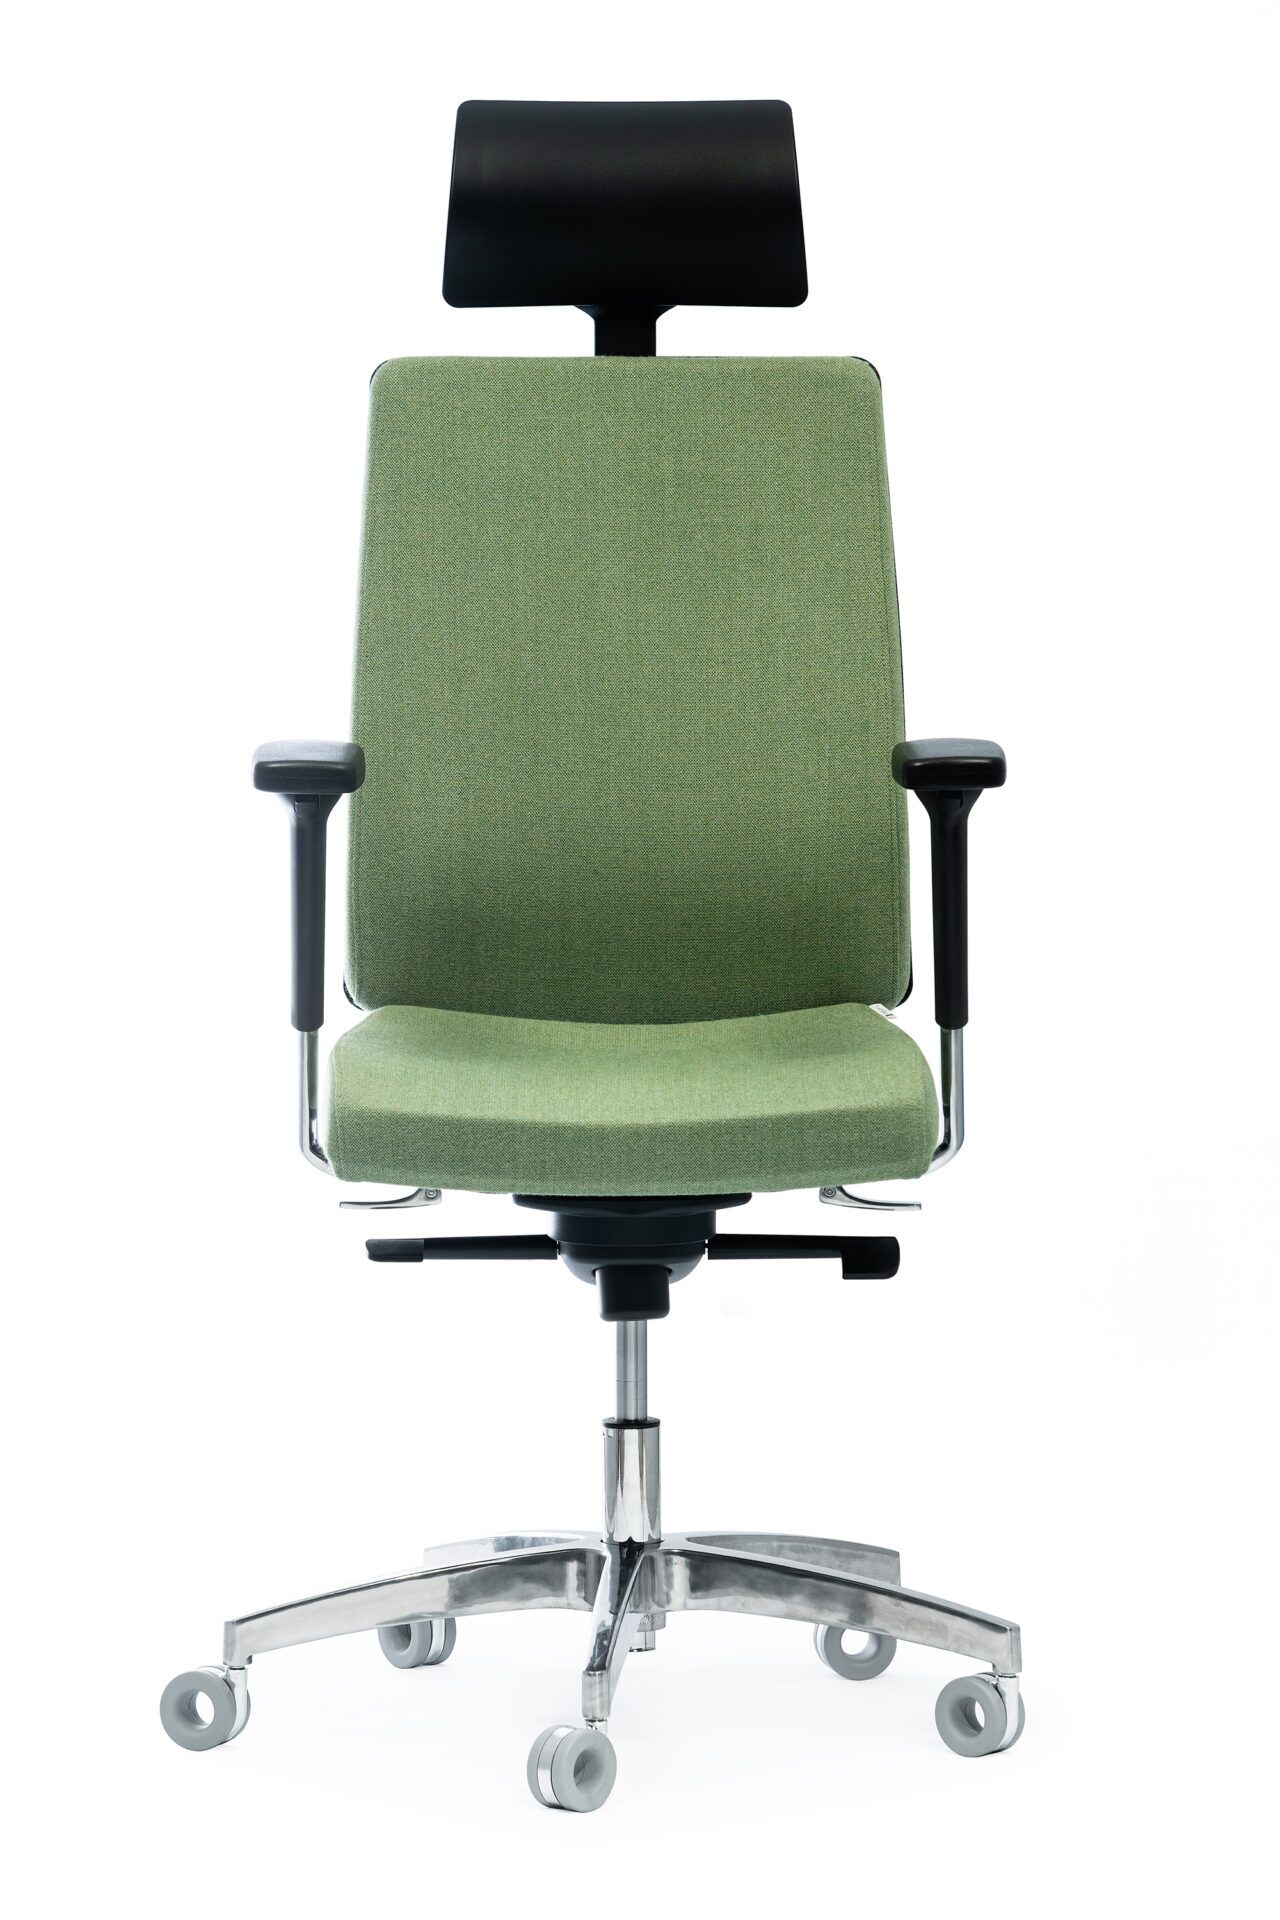 Zielony fotel biurowy z czarnym zagłówkiem i podpórkami na kółkach frontowo